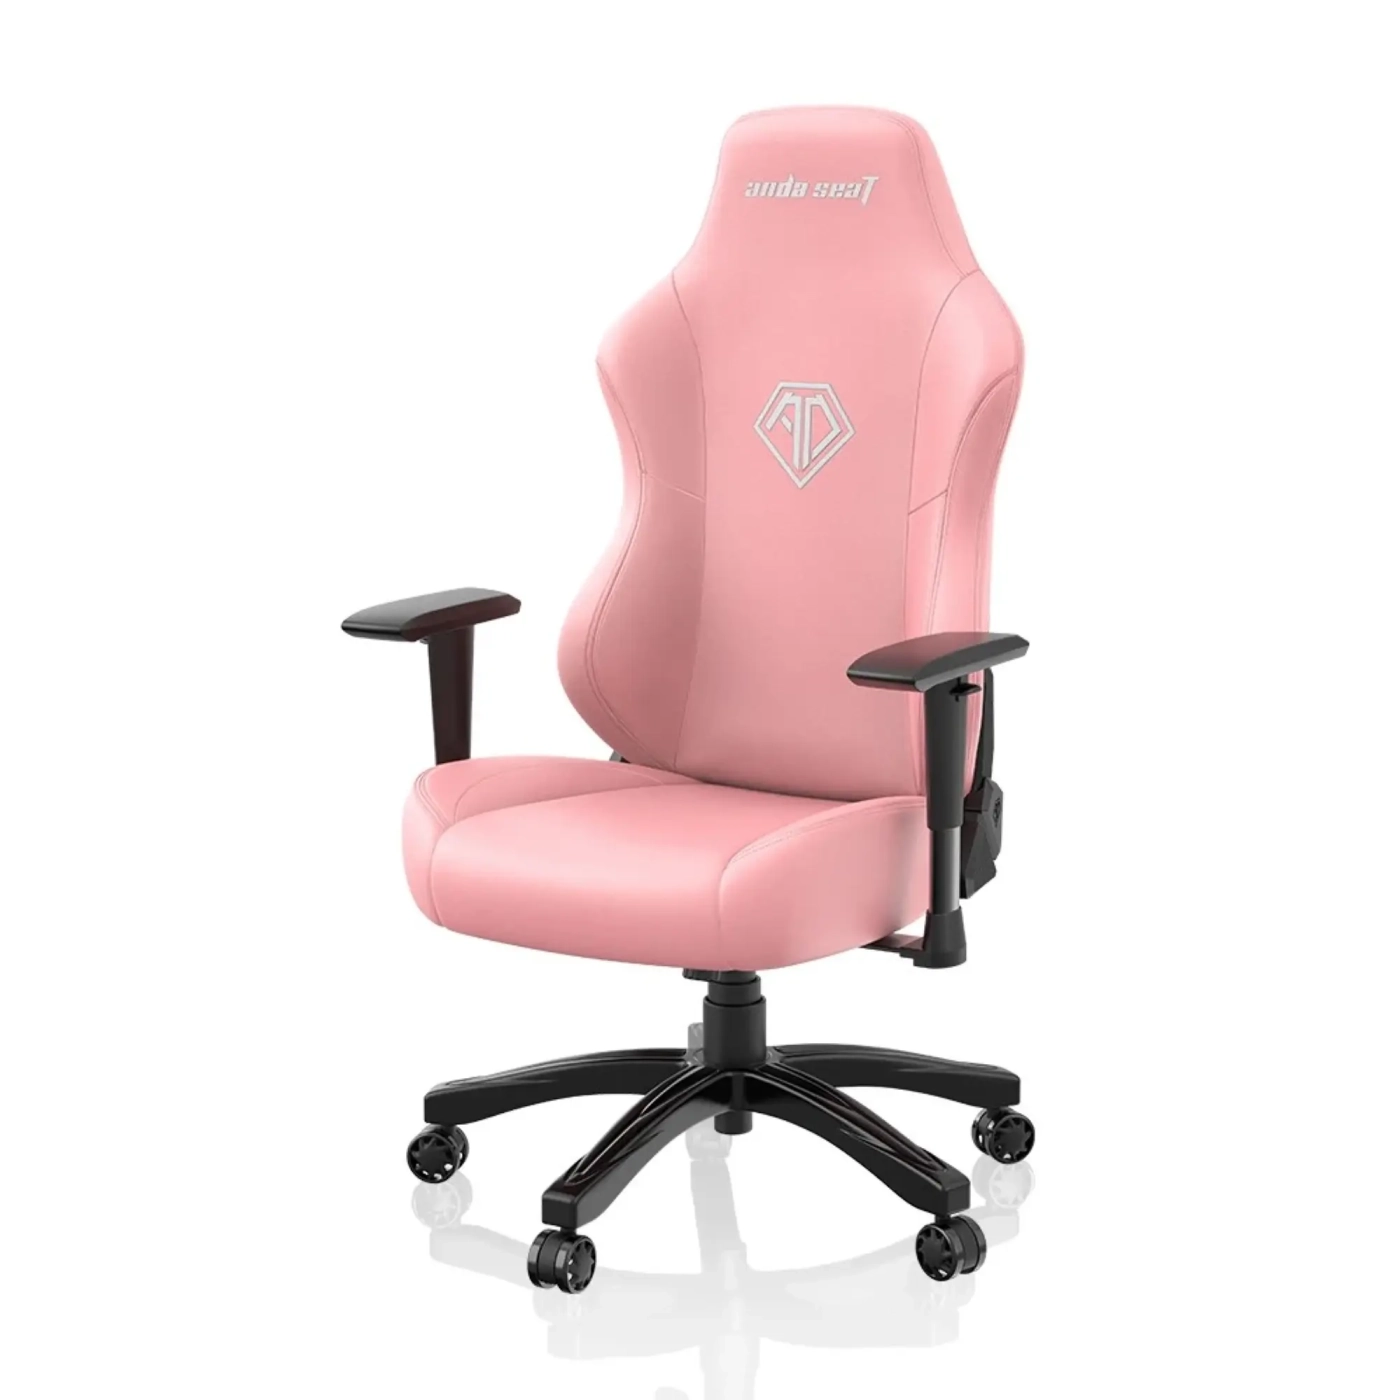 Купить Кресло для геймеров Anda Seat Phantom 3 L Creamy Pink (AD18Y-06-P-PV) - фото 3